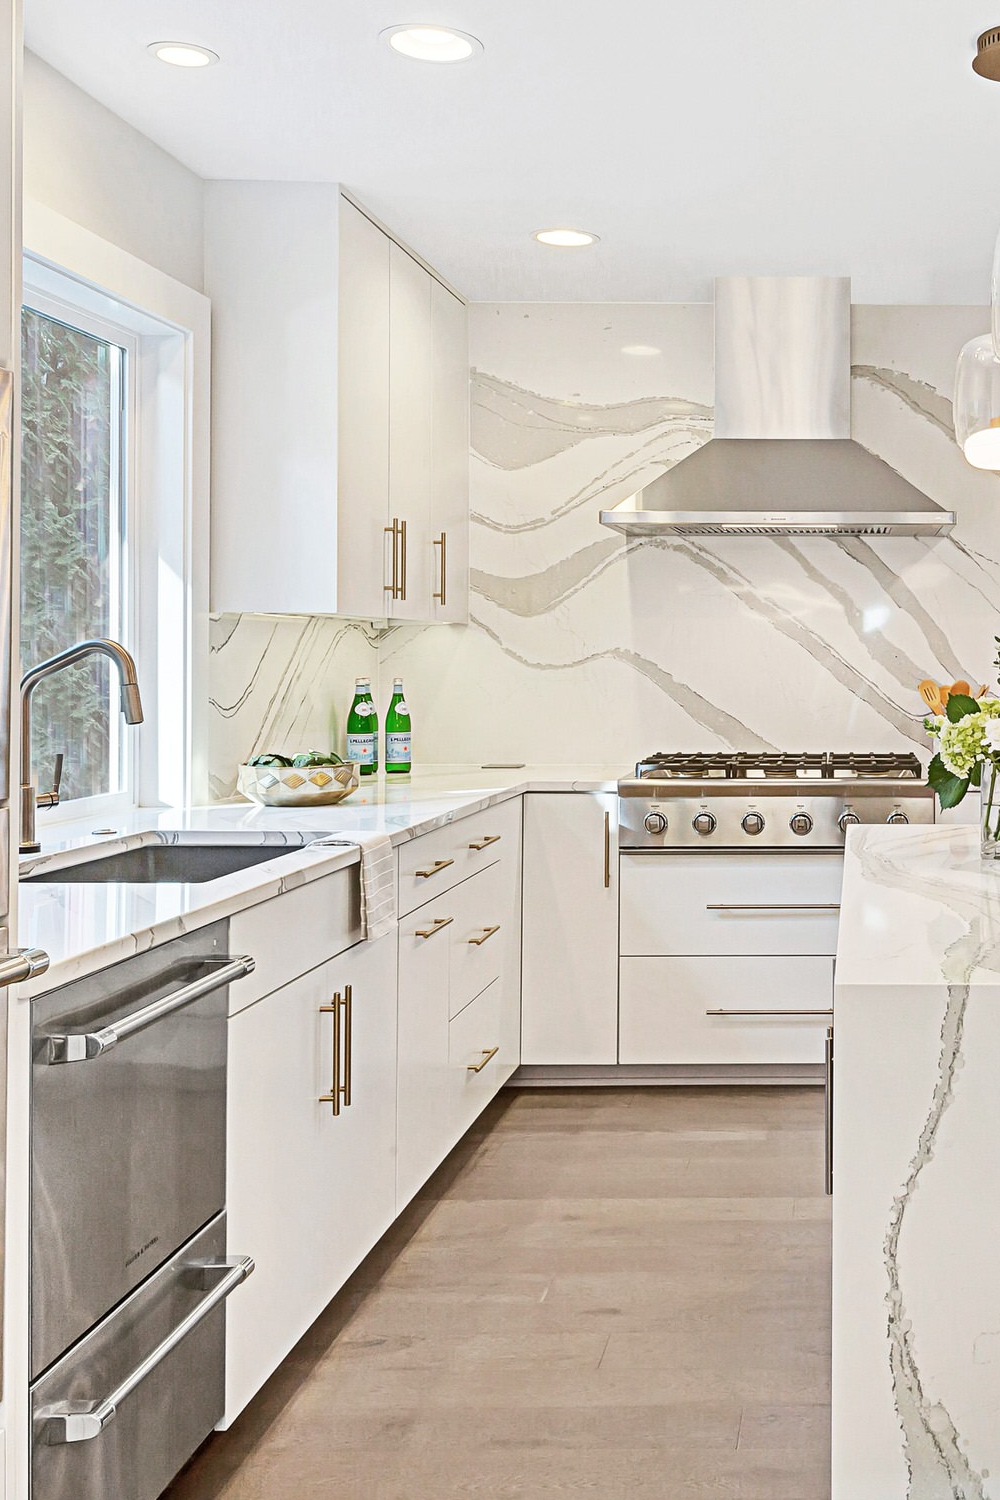 Quartz Countertop Quartz Backsplash White Kitchen Design Flooring Stylish Warm Tones